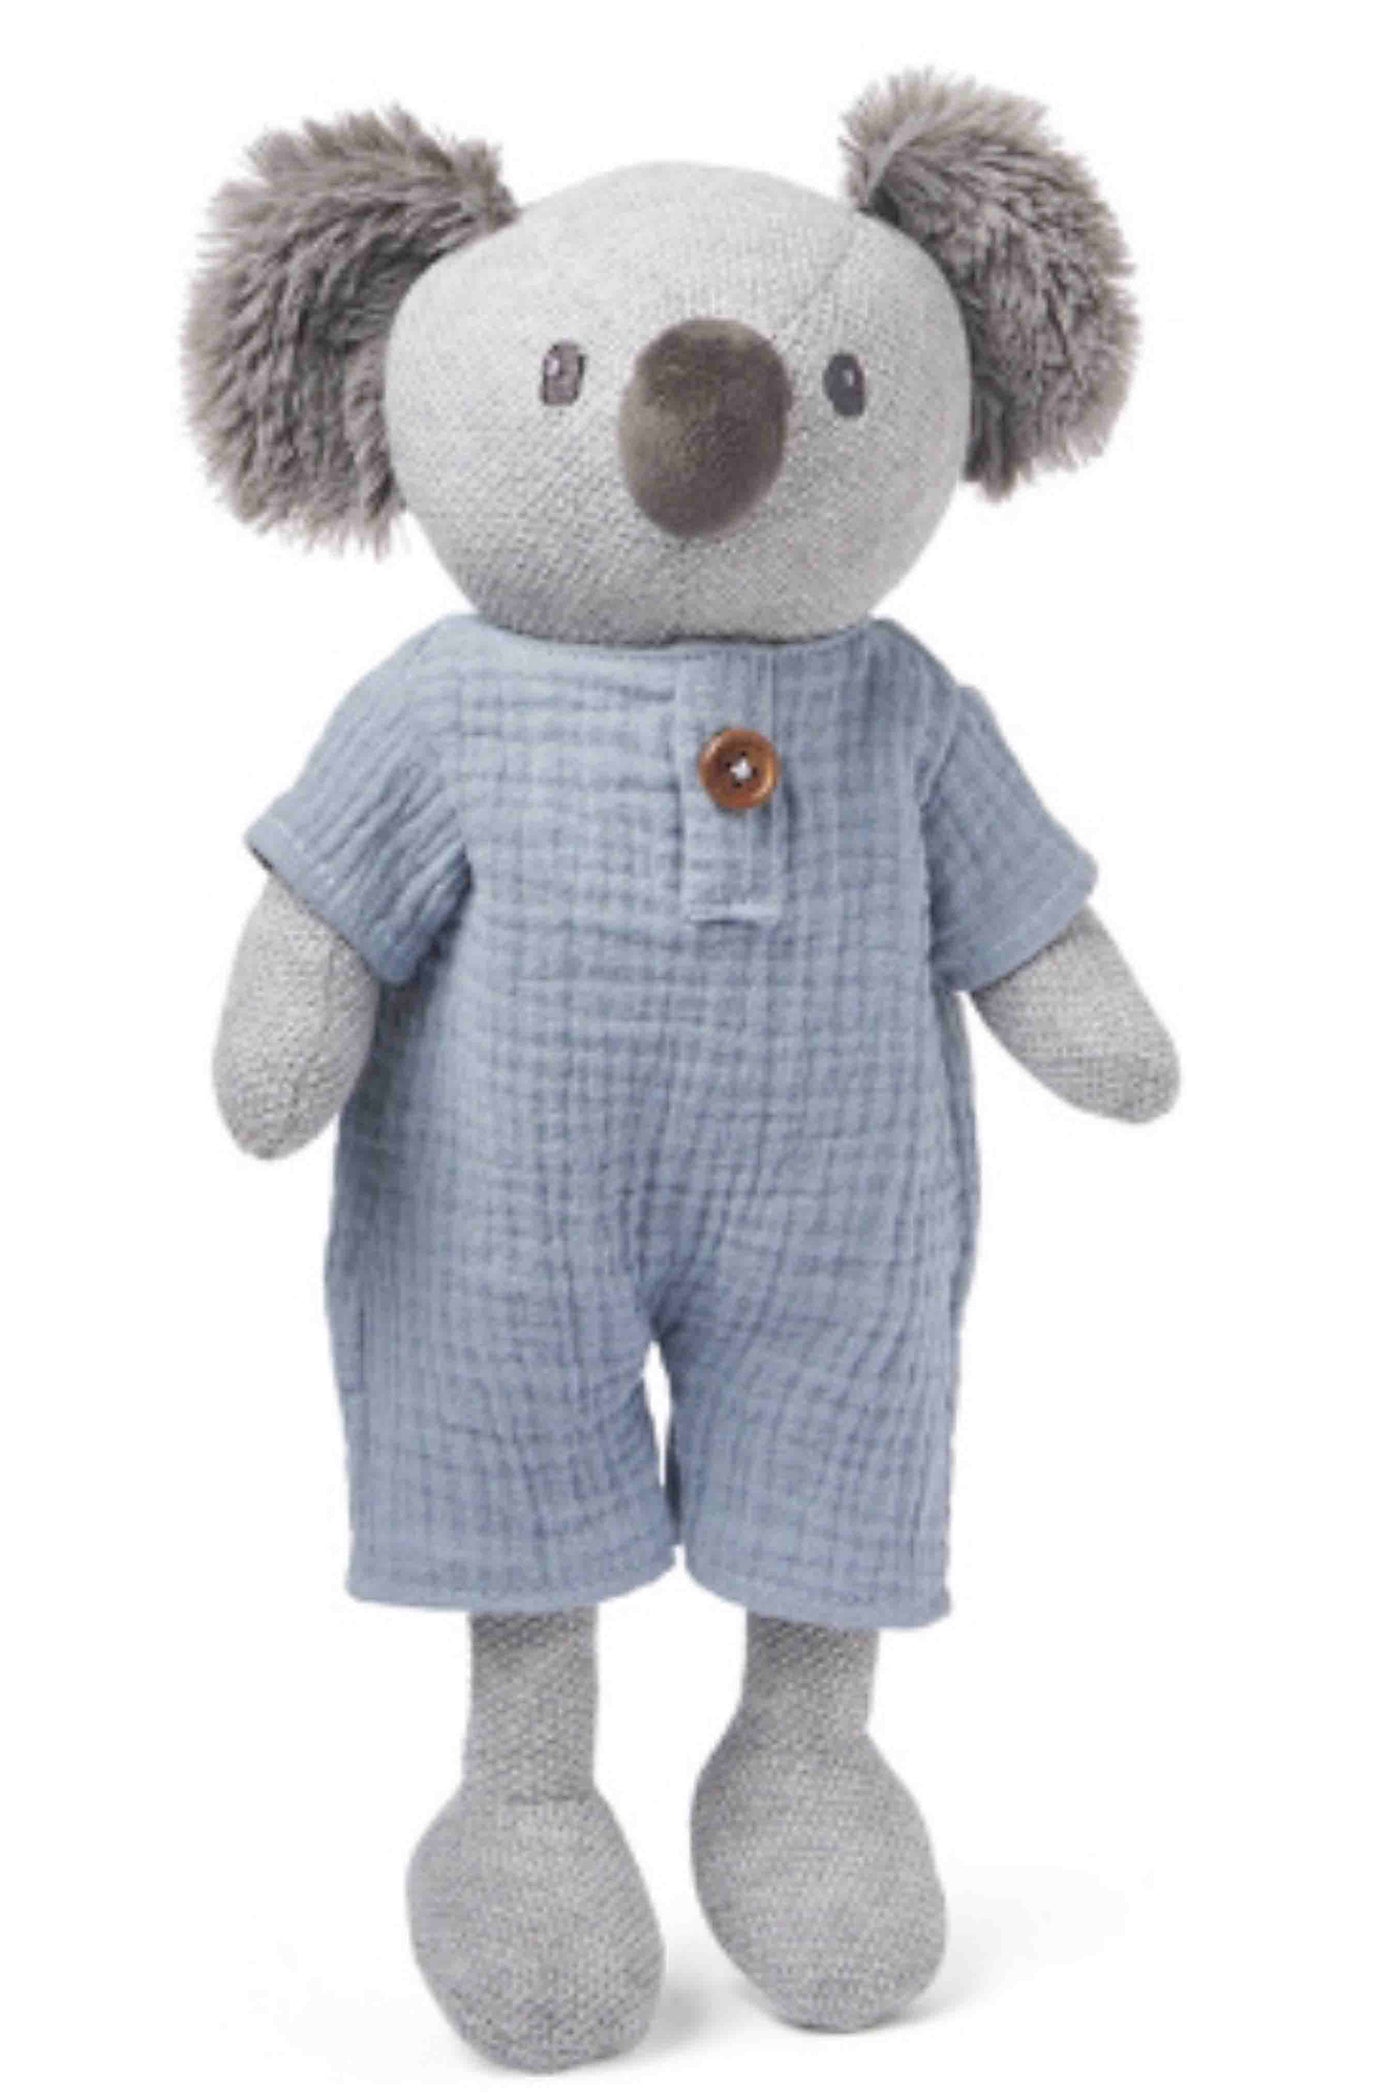 Koala Toy by Elegant Baby